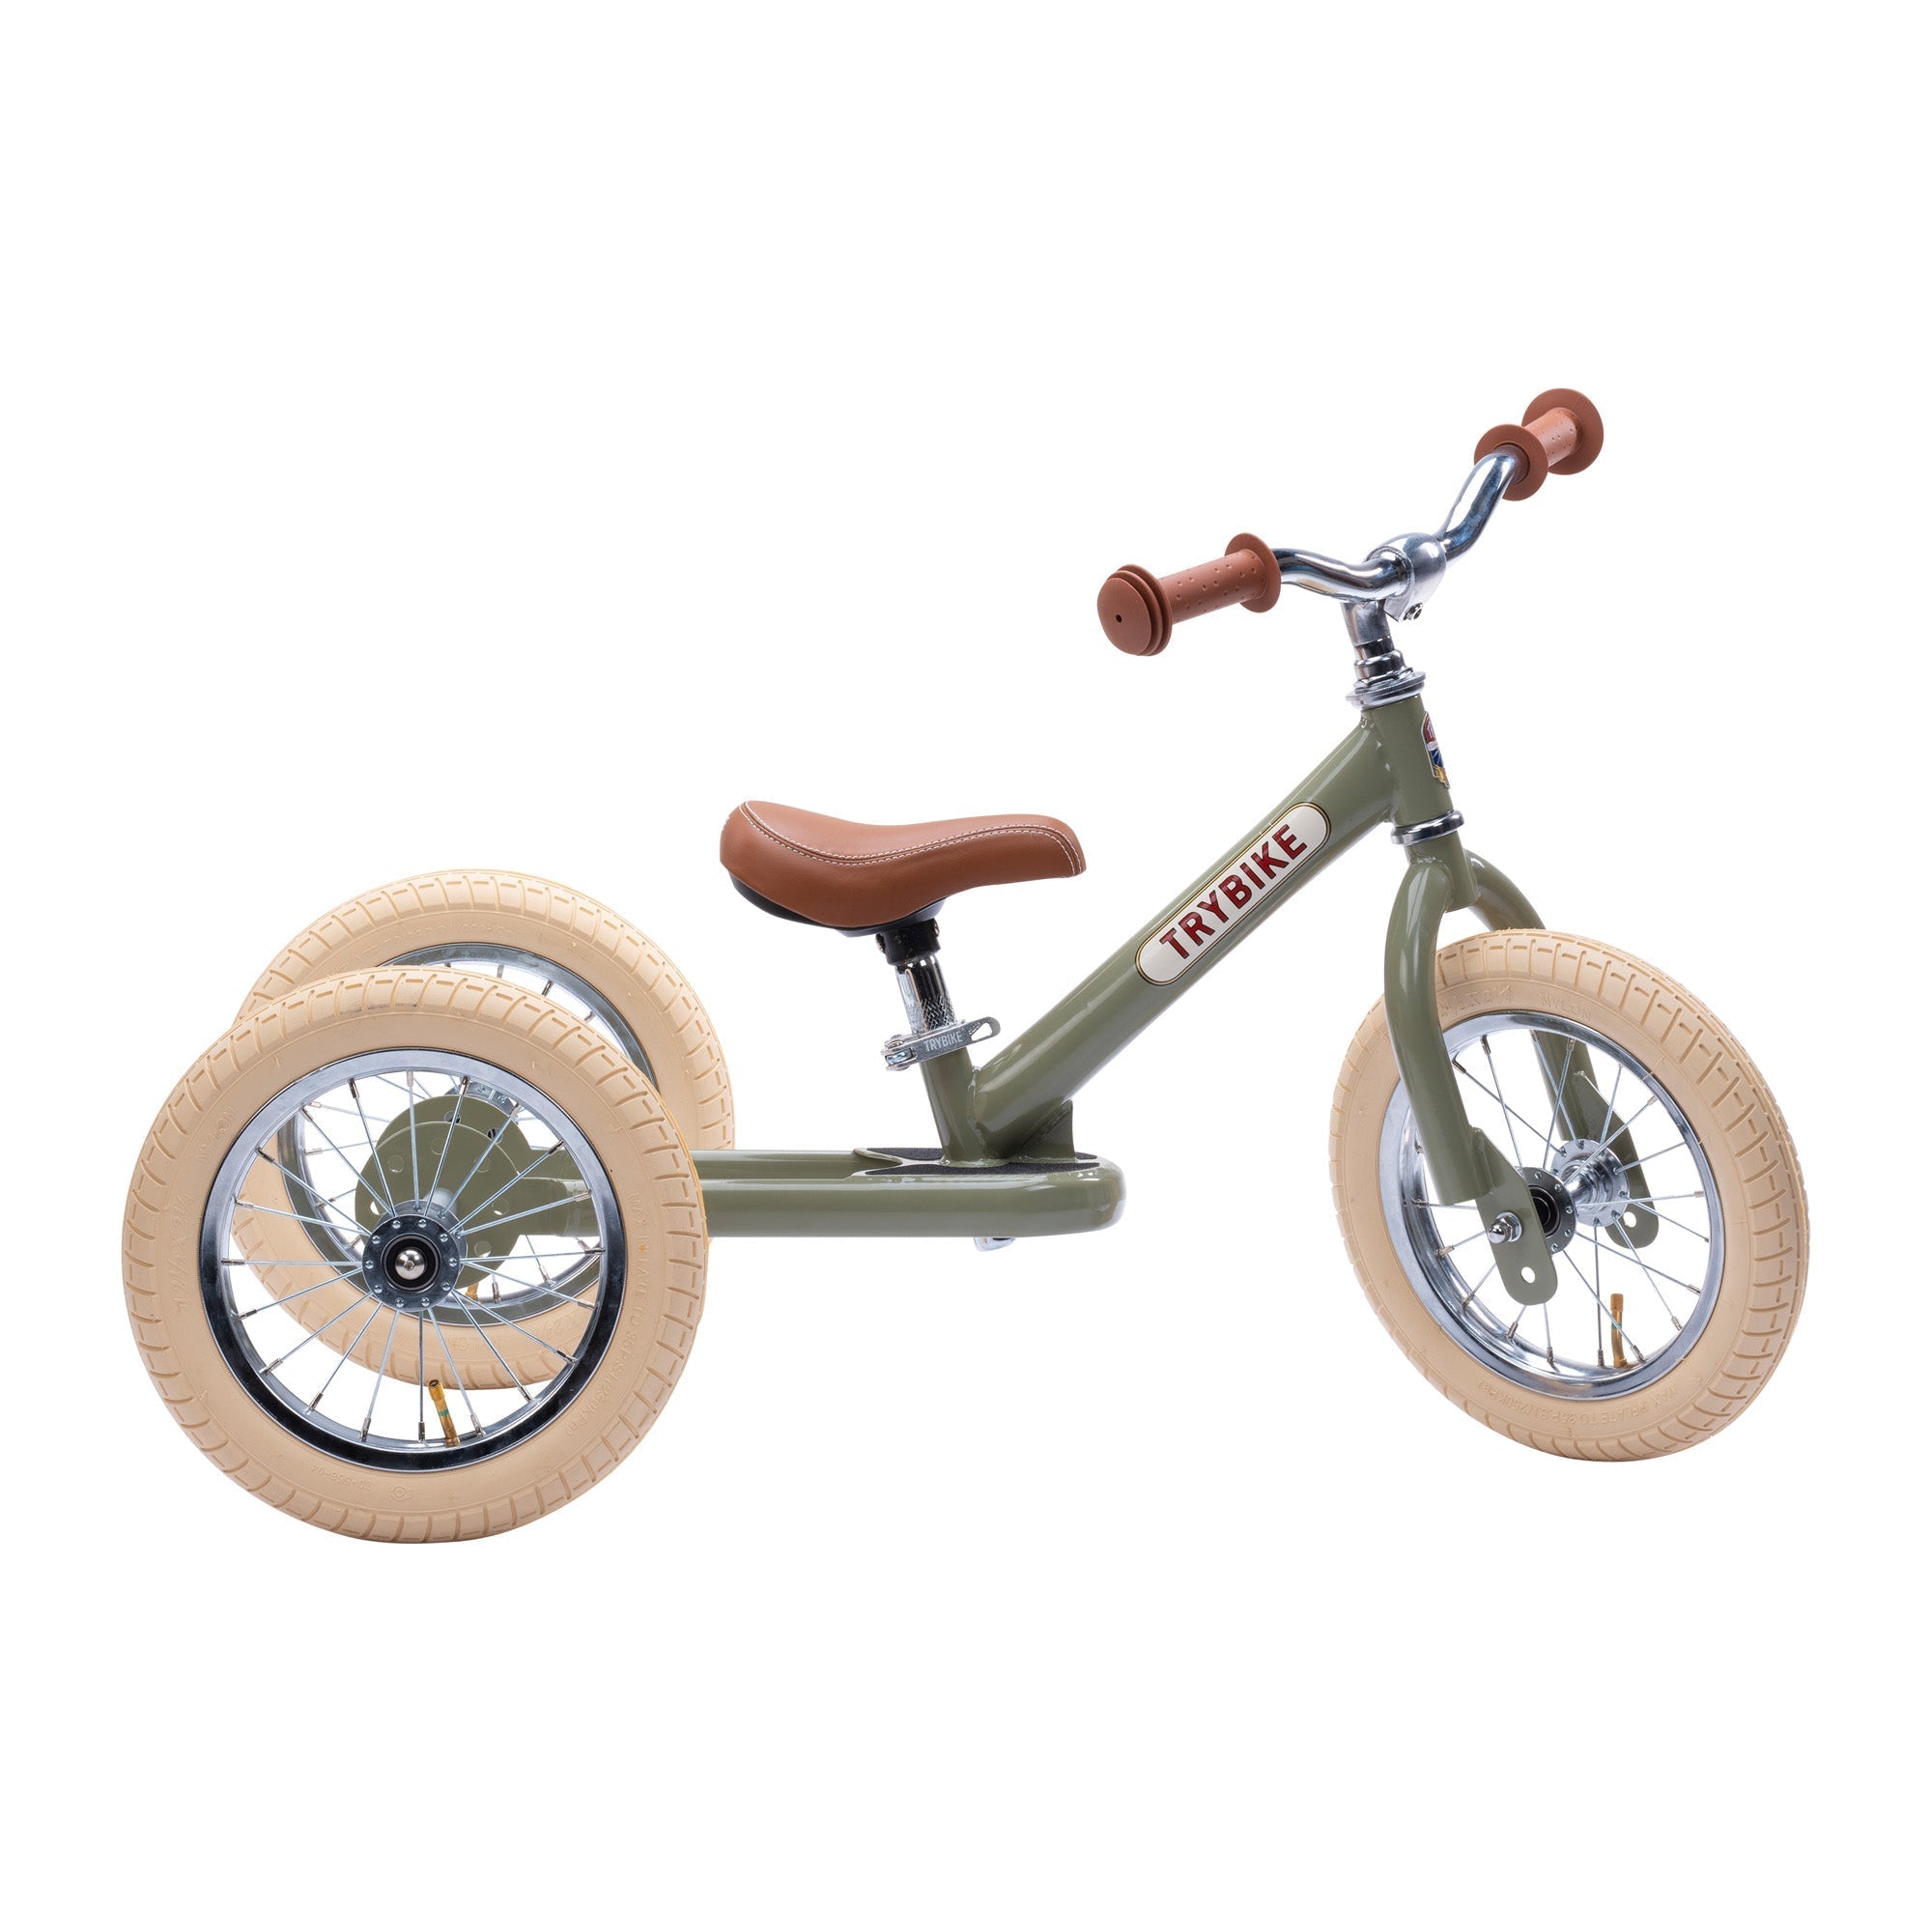 draisienne tricycle 2 en 1 vintage vert 3 roues evolutive - TRYBIKE TBS-3-GRN-VIN 8719189161748